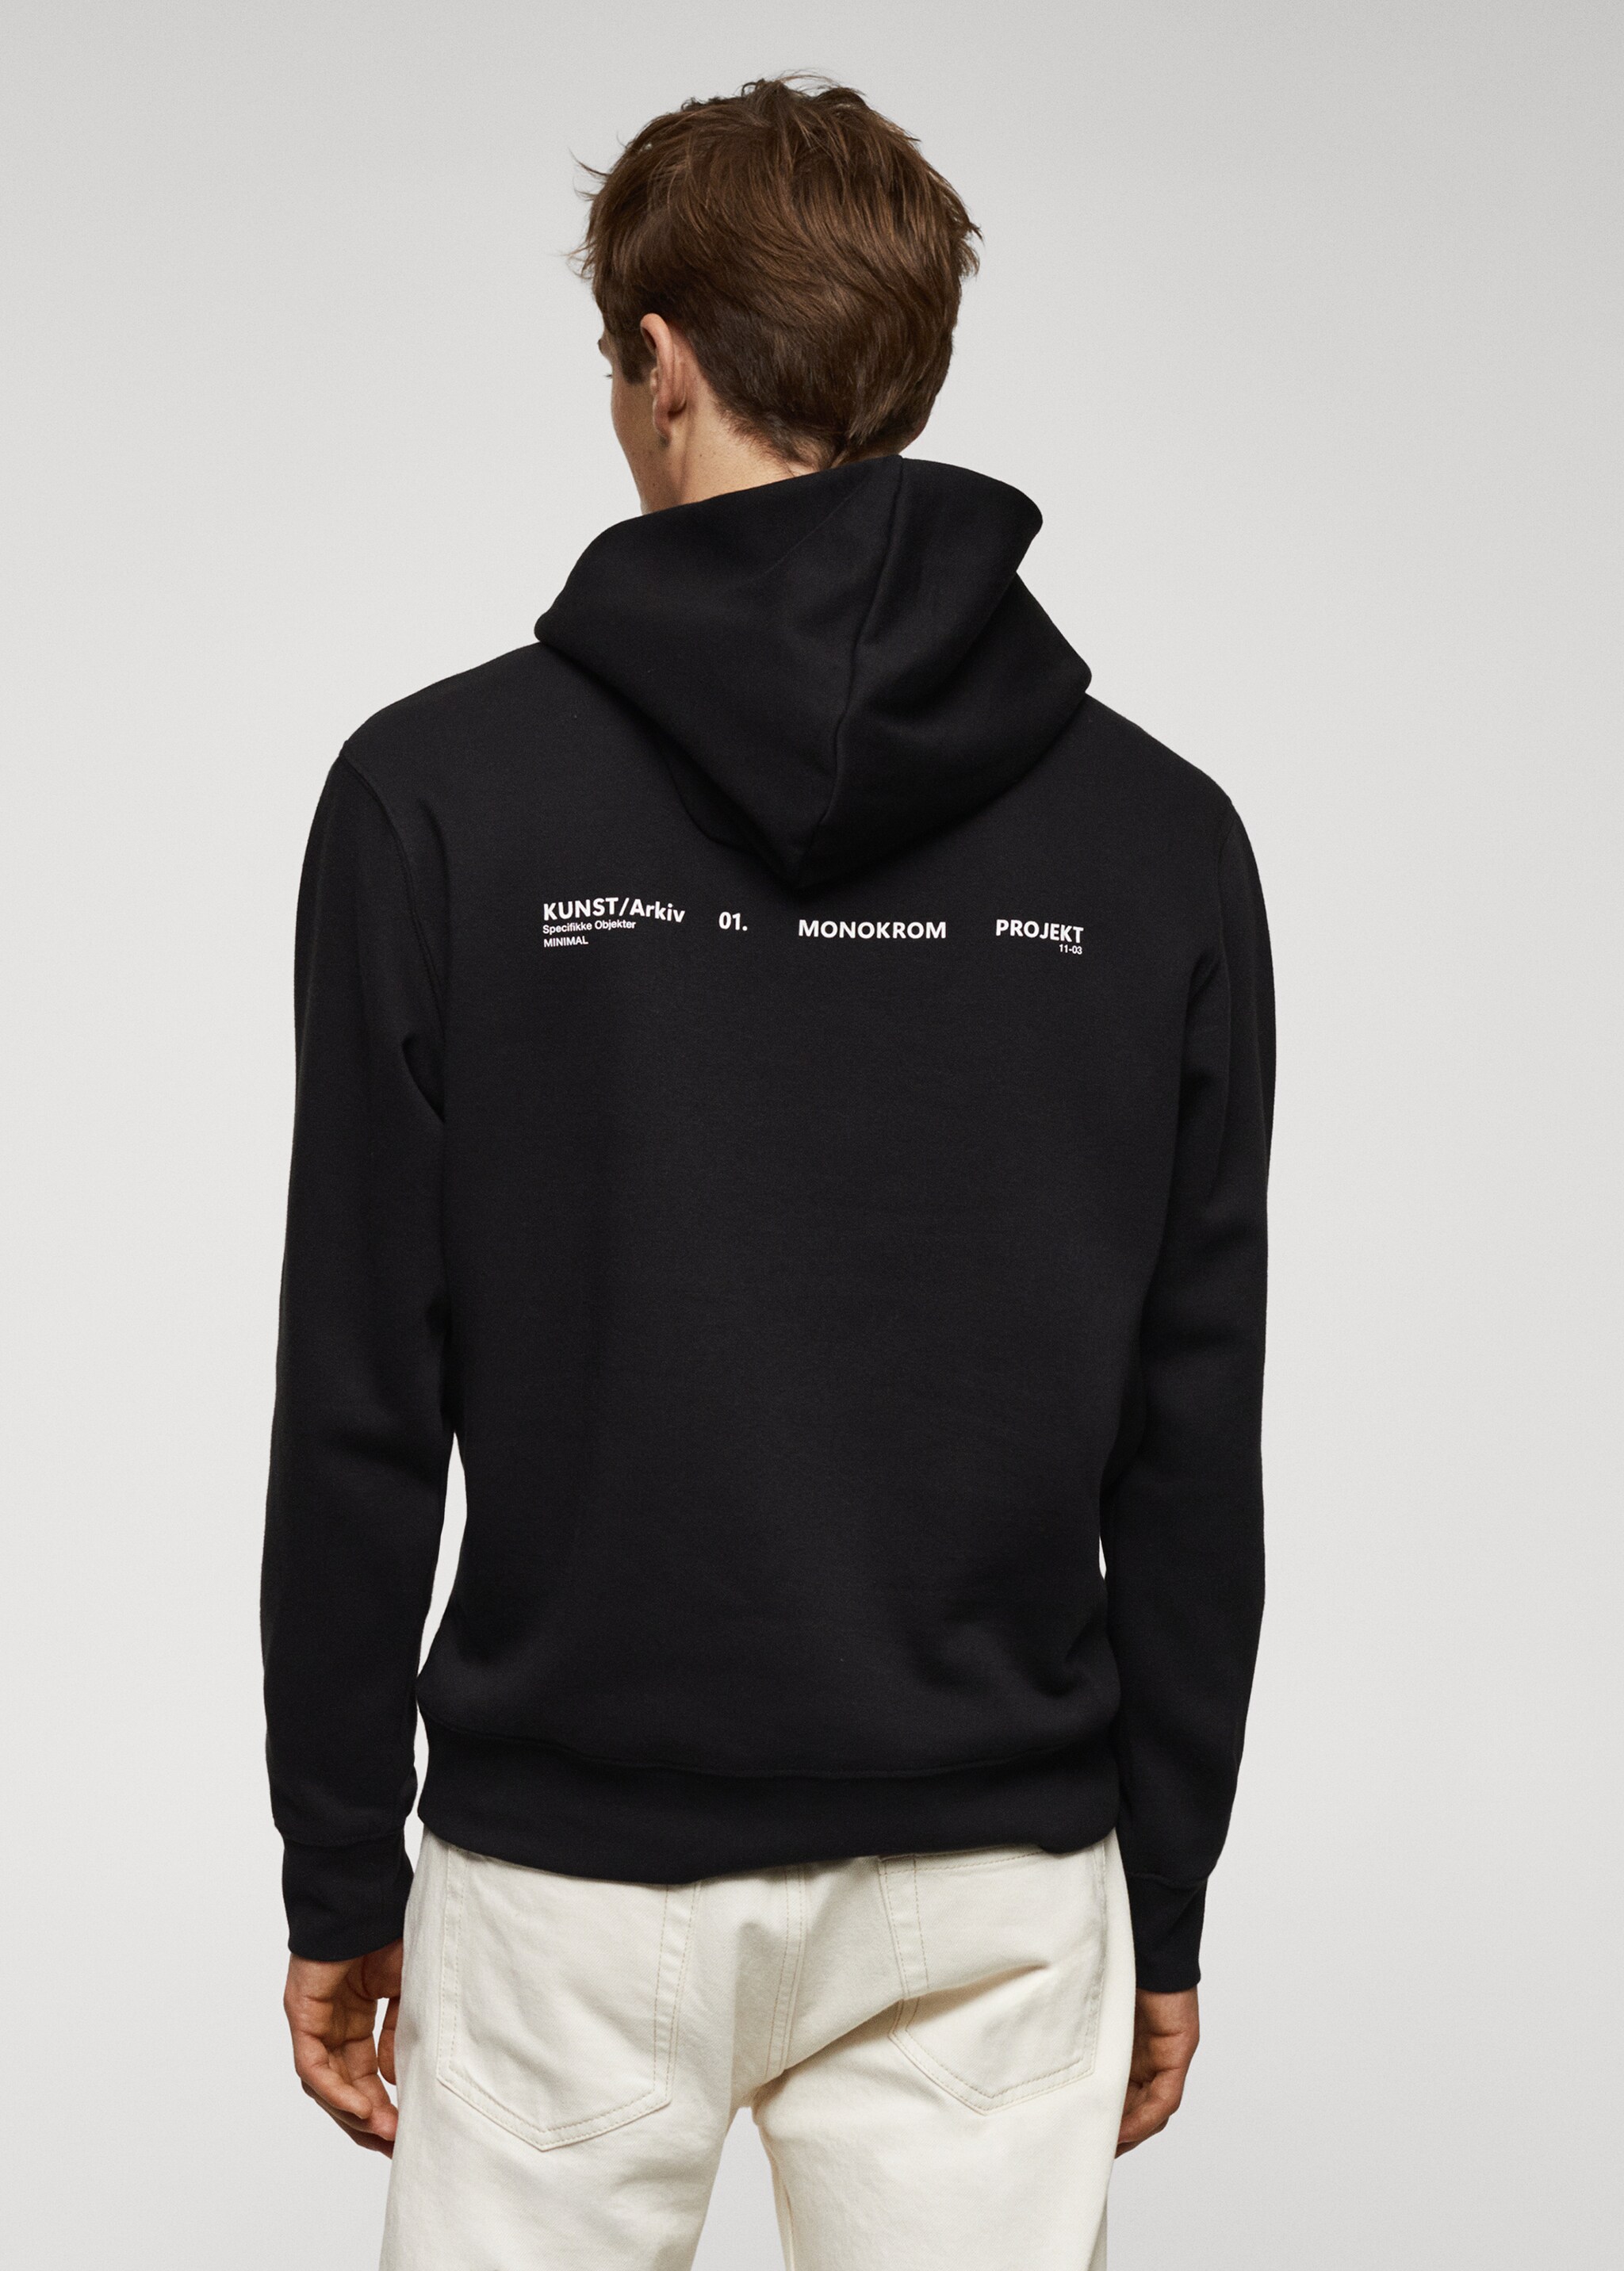 Baumwoll-Kapuzensweatshirt mit Schriftzug - Rückseite des Artikels